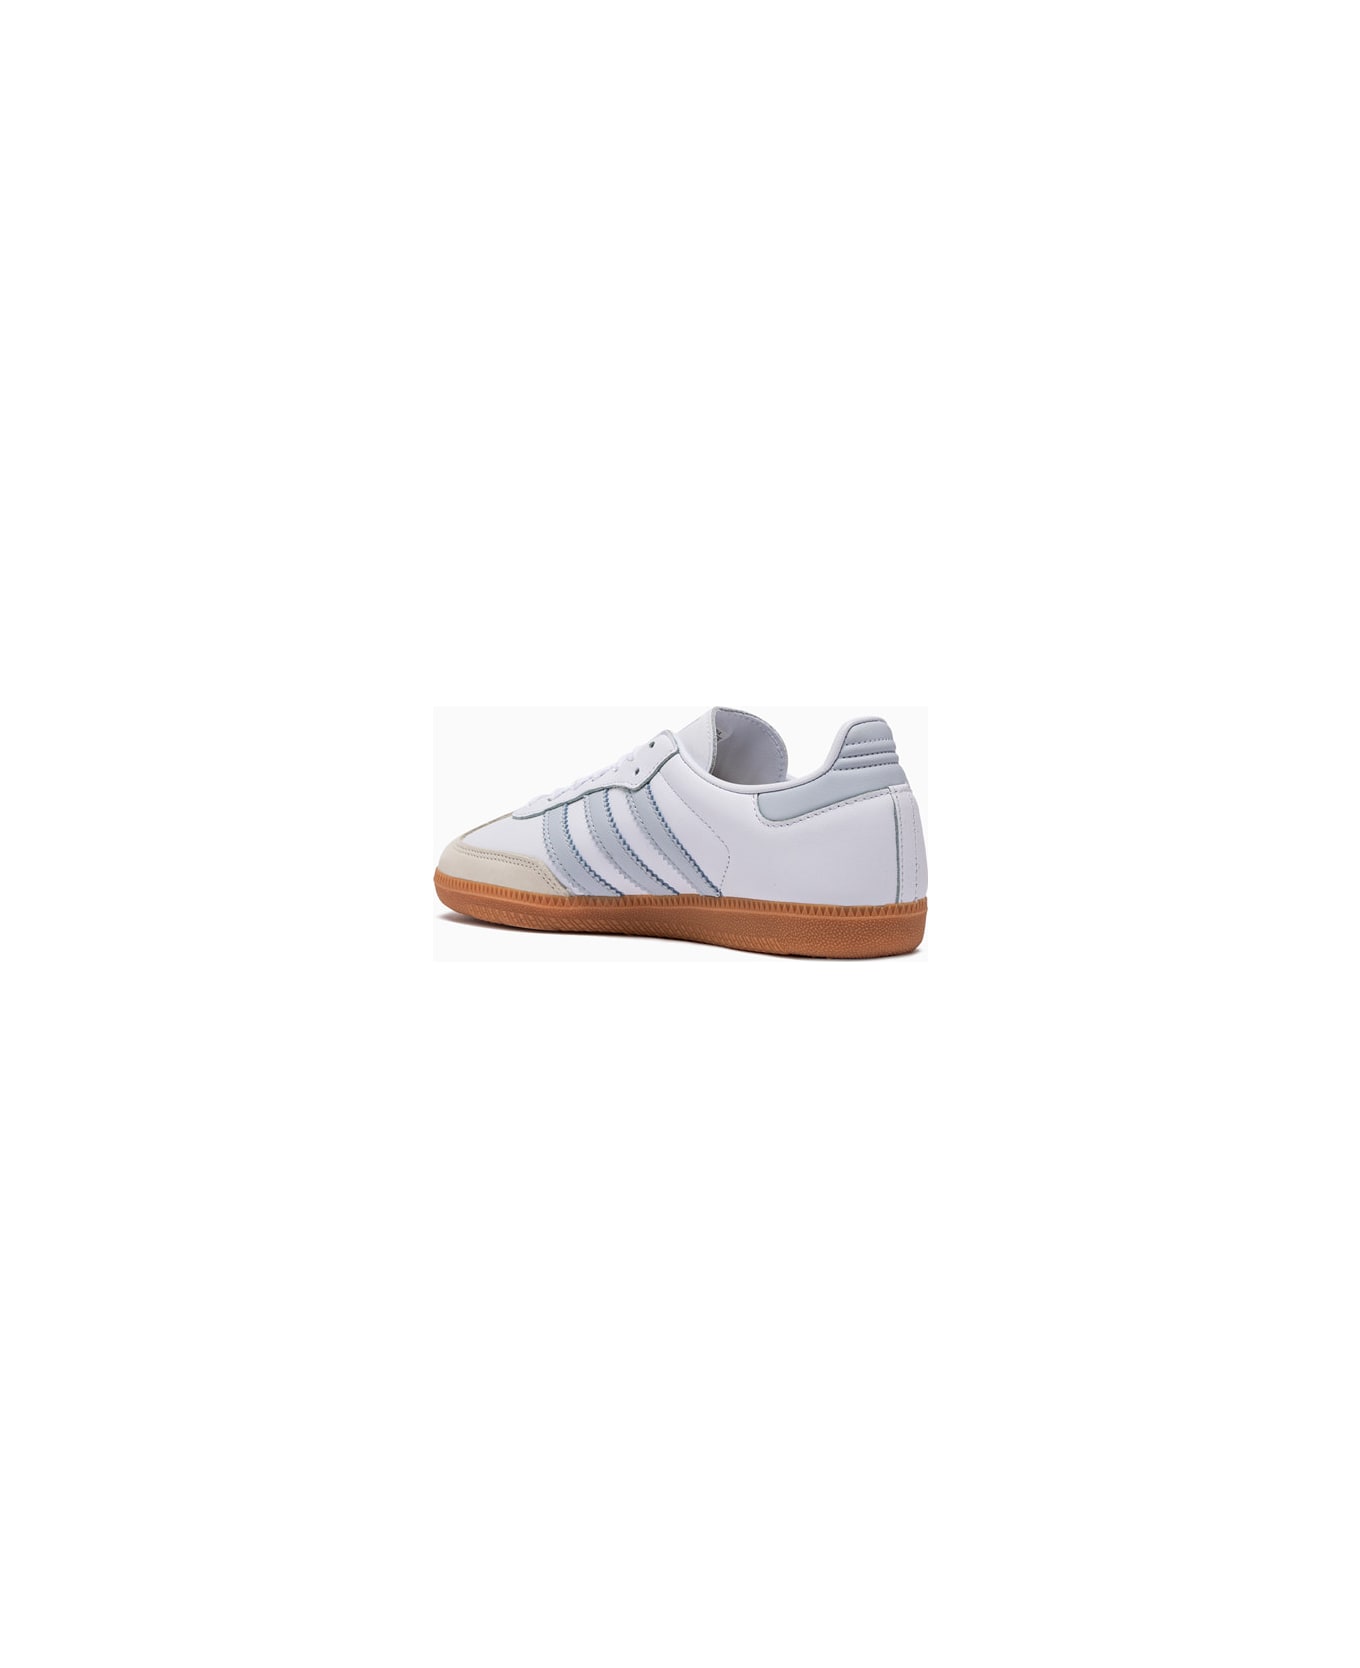 Adidas Samba Og W Sneakers Ie0877 - White スニーカー